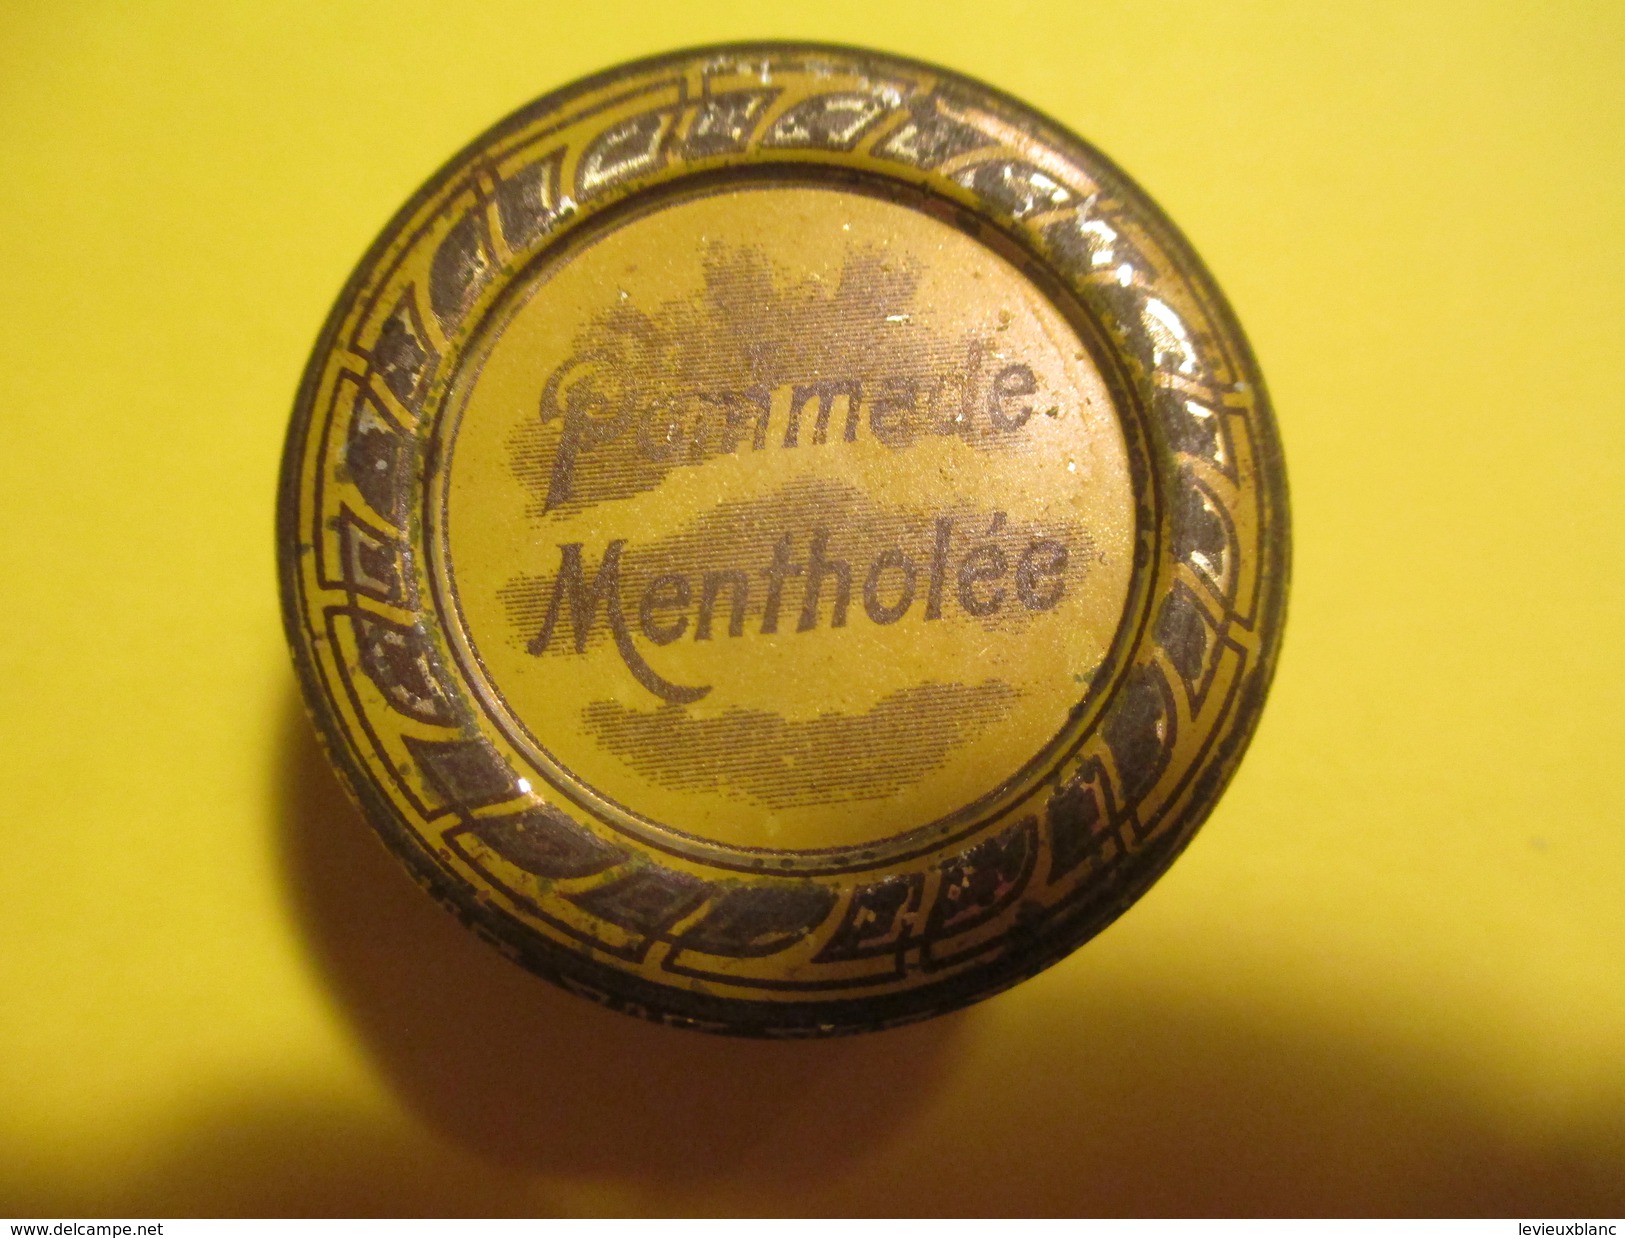 4 Boites Métalliques/Pharma/Pommade Mentholée/Pom.oxydée Zinc/Vaseline Chimiqt Pure/Vas.Boriquée/Vers 1920-1930?  BFPP95 - Cajas